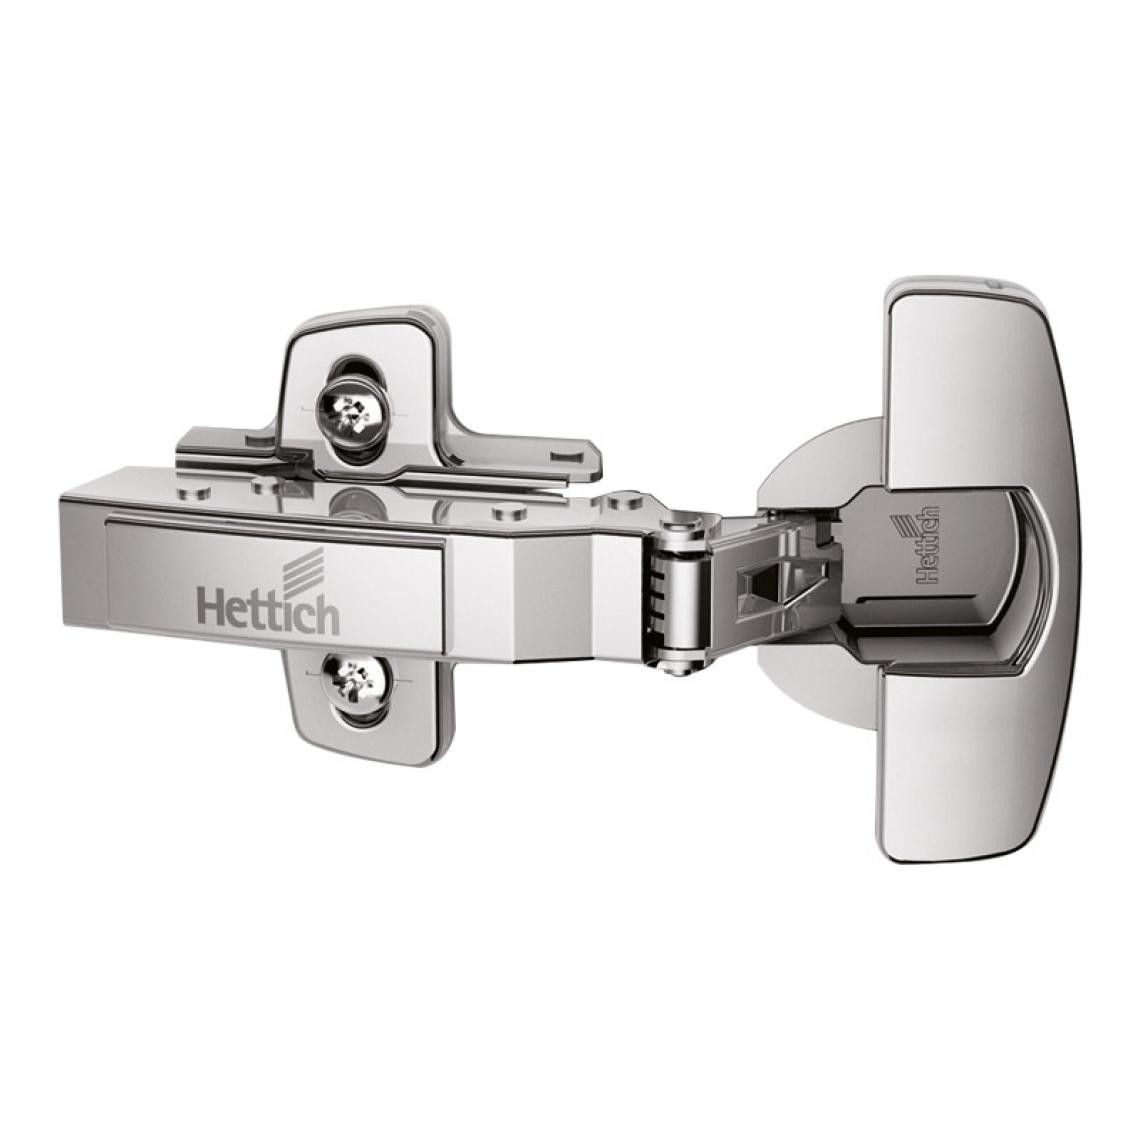 Hettich - Lot de 2 charnières sensys invisibles avec accessoires - Coudure : 9,5 mm - Décor : Nickelé - Montage : En demi-applique - HETTICH - Charnière